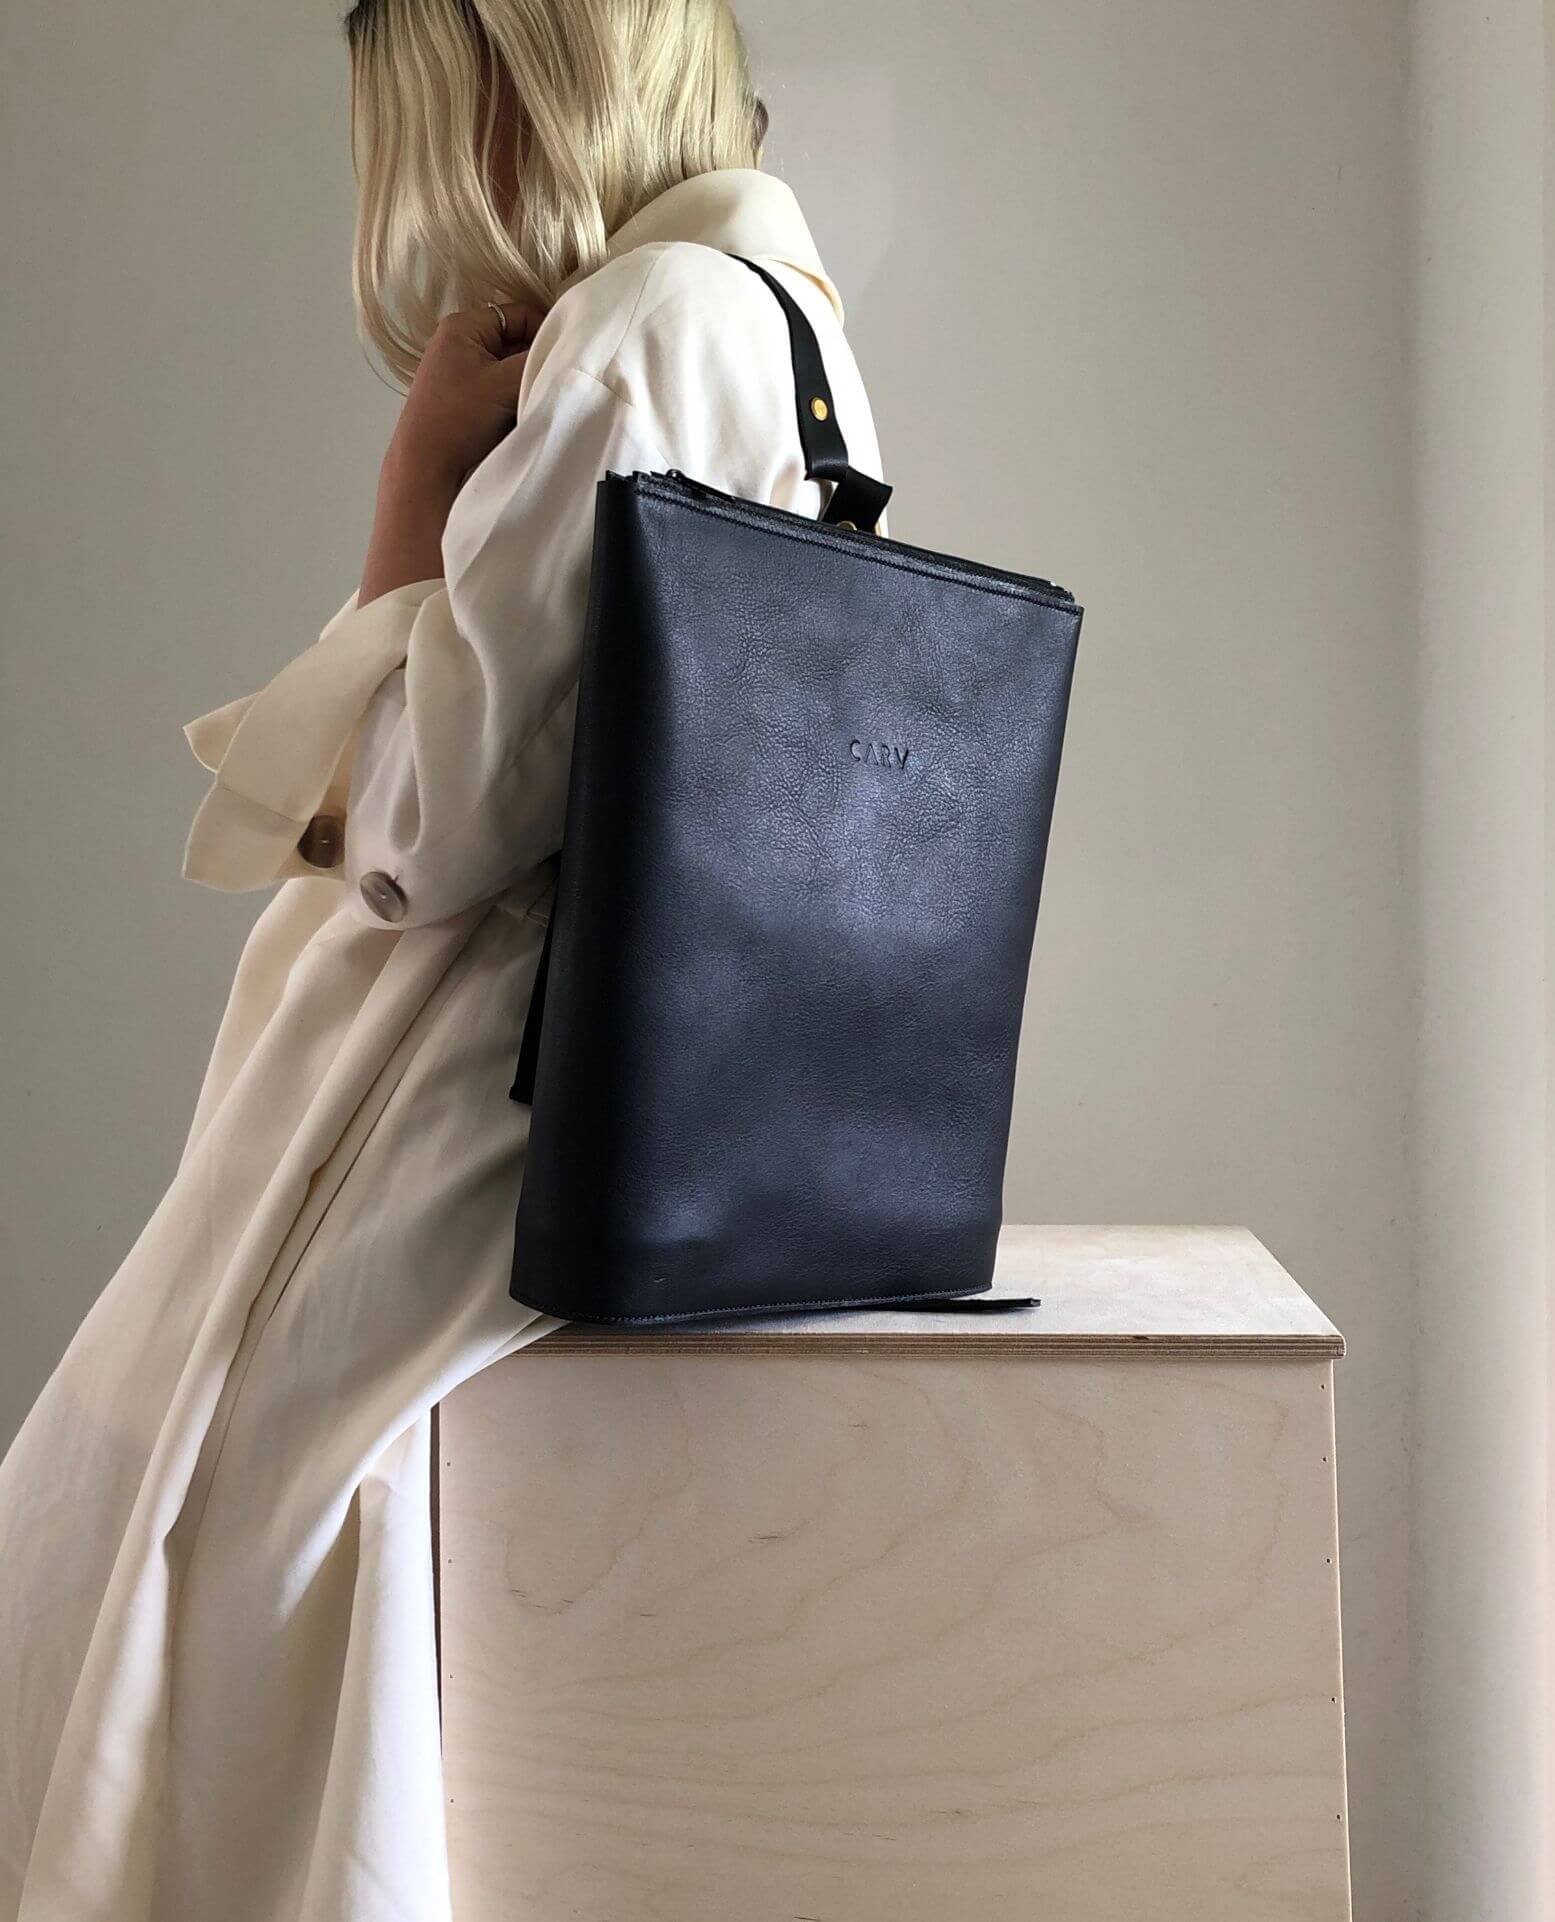 Leather Designer Backpack High Quality Handmade Luxury Bag For Women/Men UK  NEW